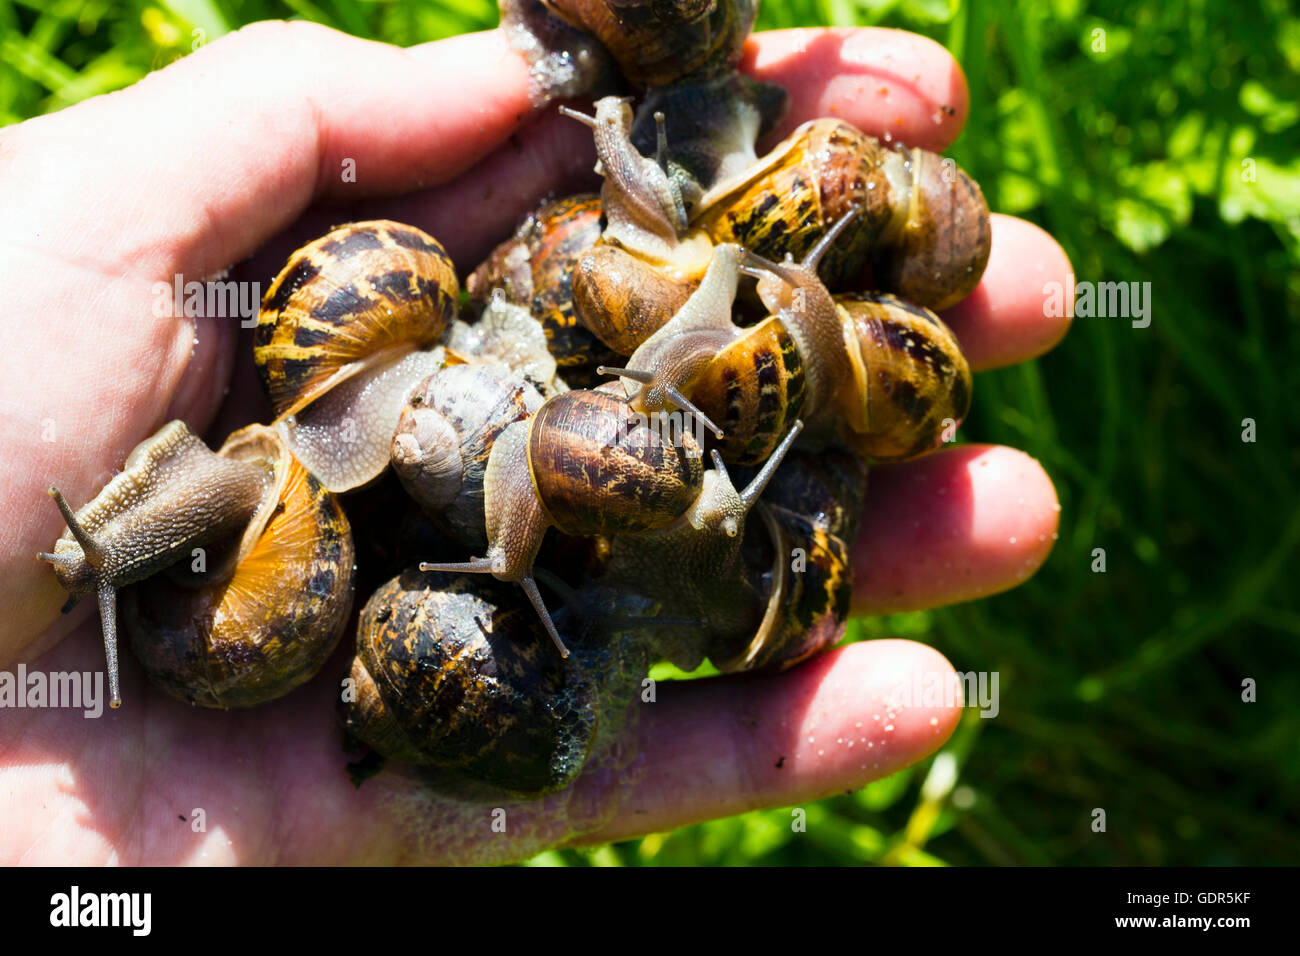 Jardinero sosteniendo los caracoles en su mano, Bristol, Reino Unido Foto de stock